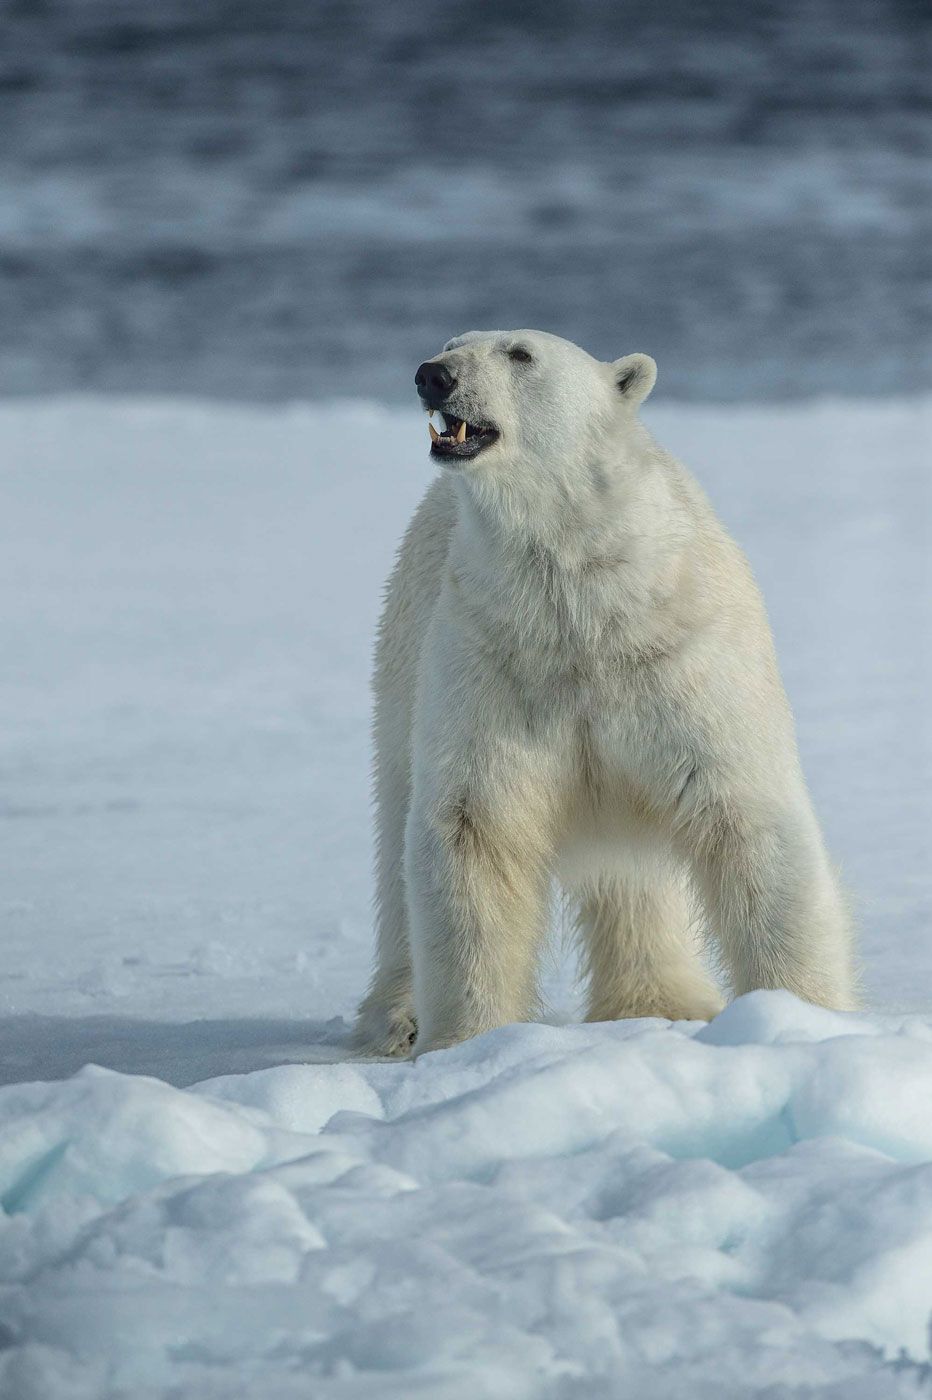 Арктика, архипелаг Шпицберген, дикая природа, путешествия, льдина, айсберг, полярный медведь, белый медведь, Анна Яценко